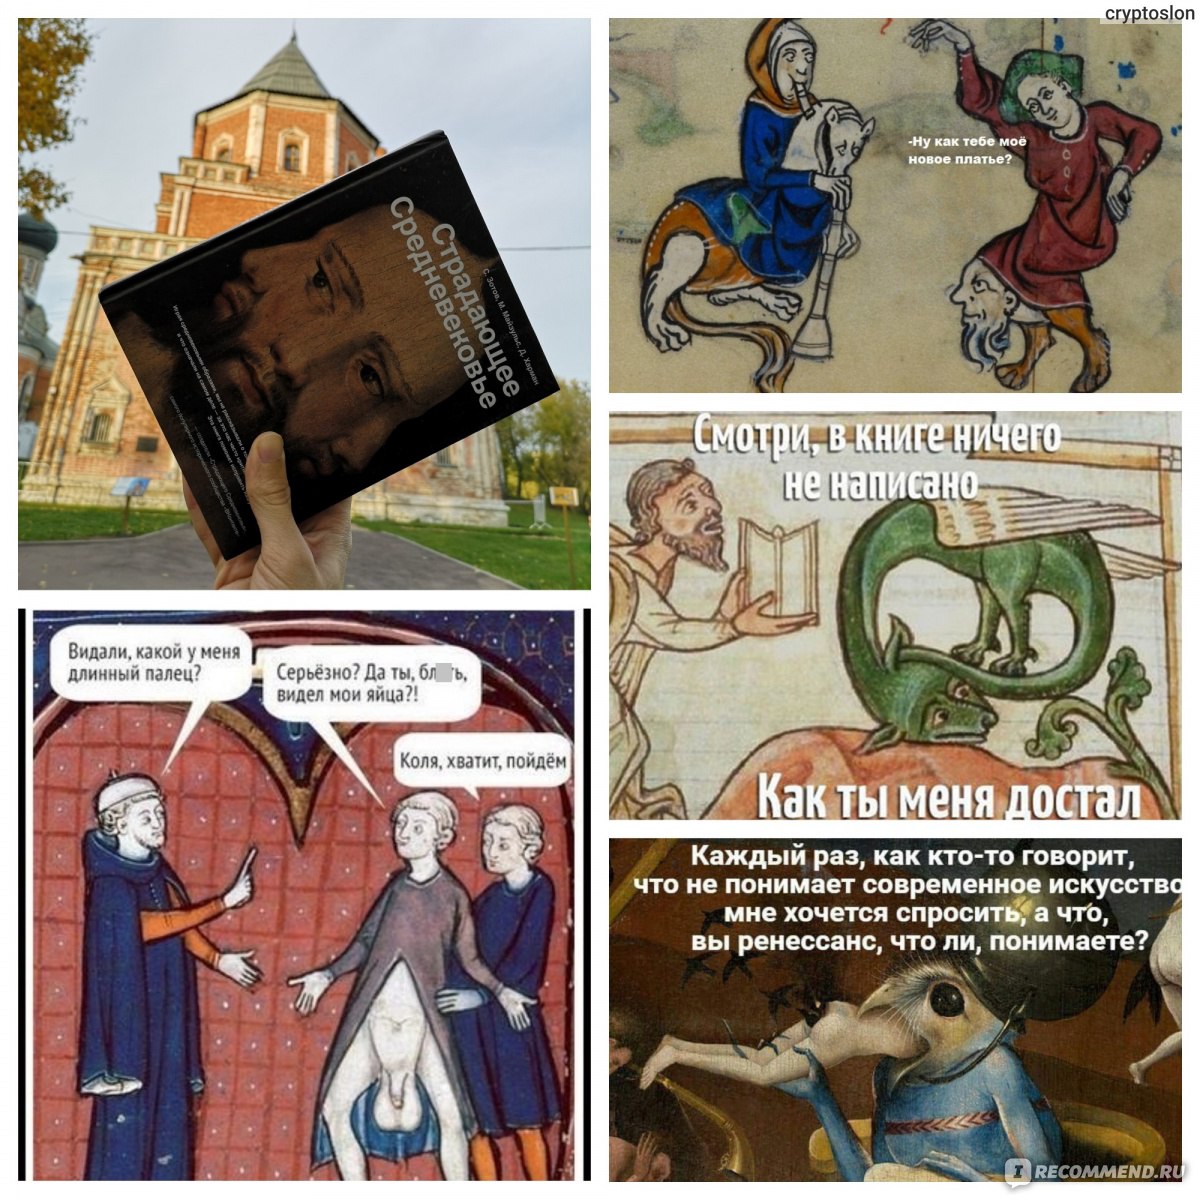 Скачать Бесплатно Порно Книги Средневековья Через Торрент